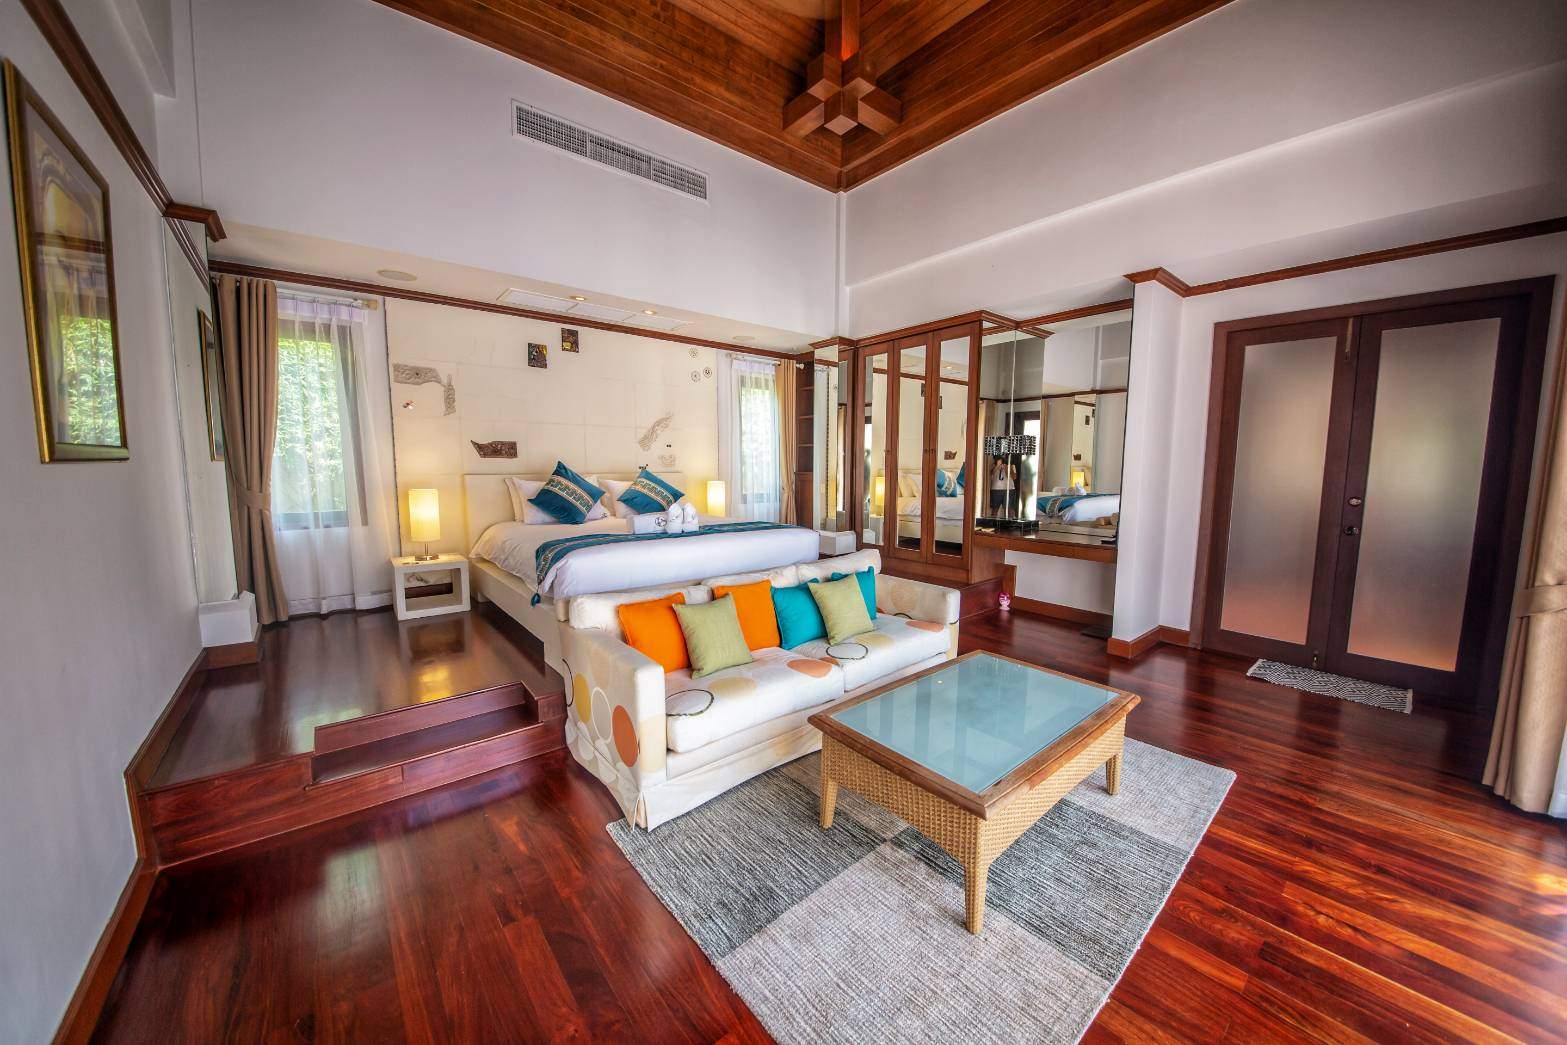 Rent villa Sai Taan 10, Thailand, Phuket, Bang Tao | Villacarte